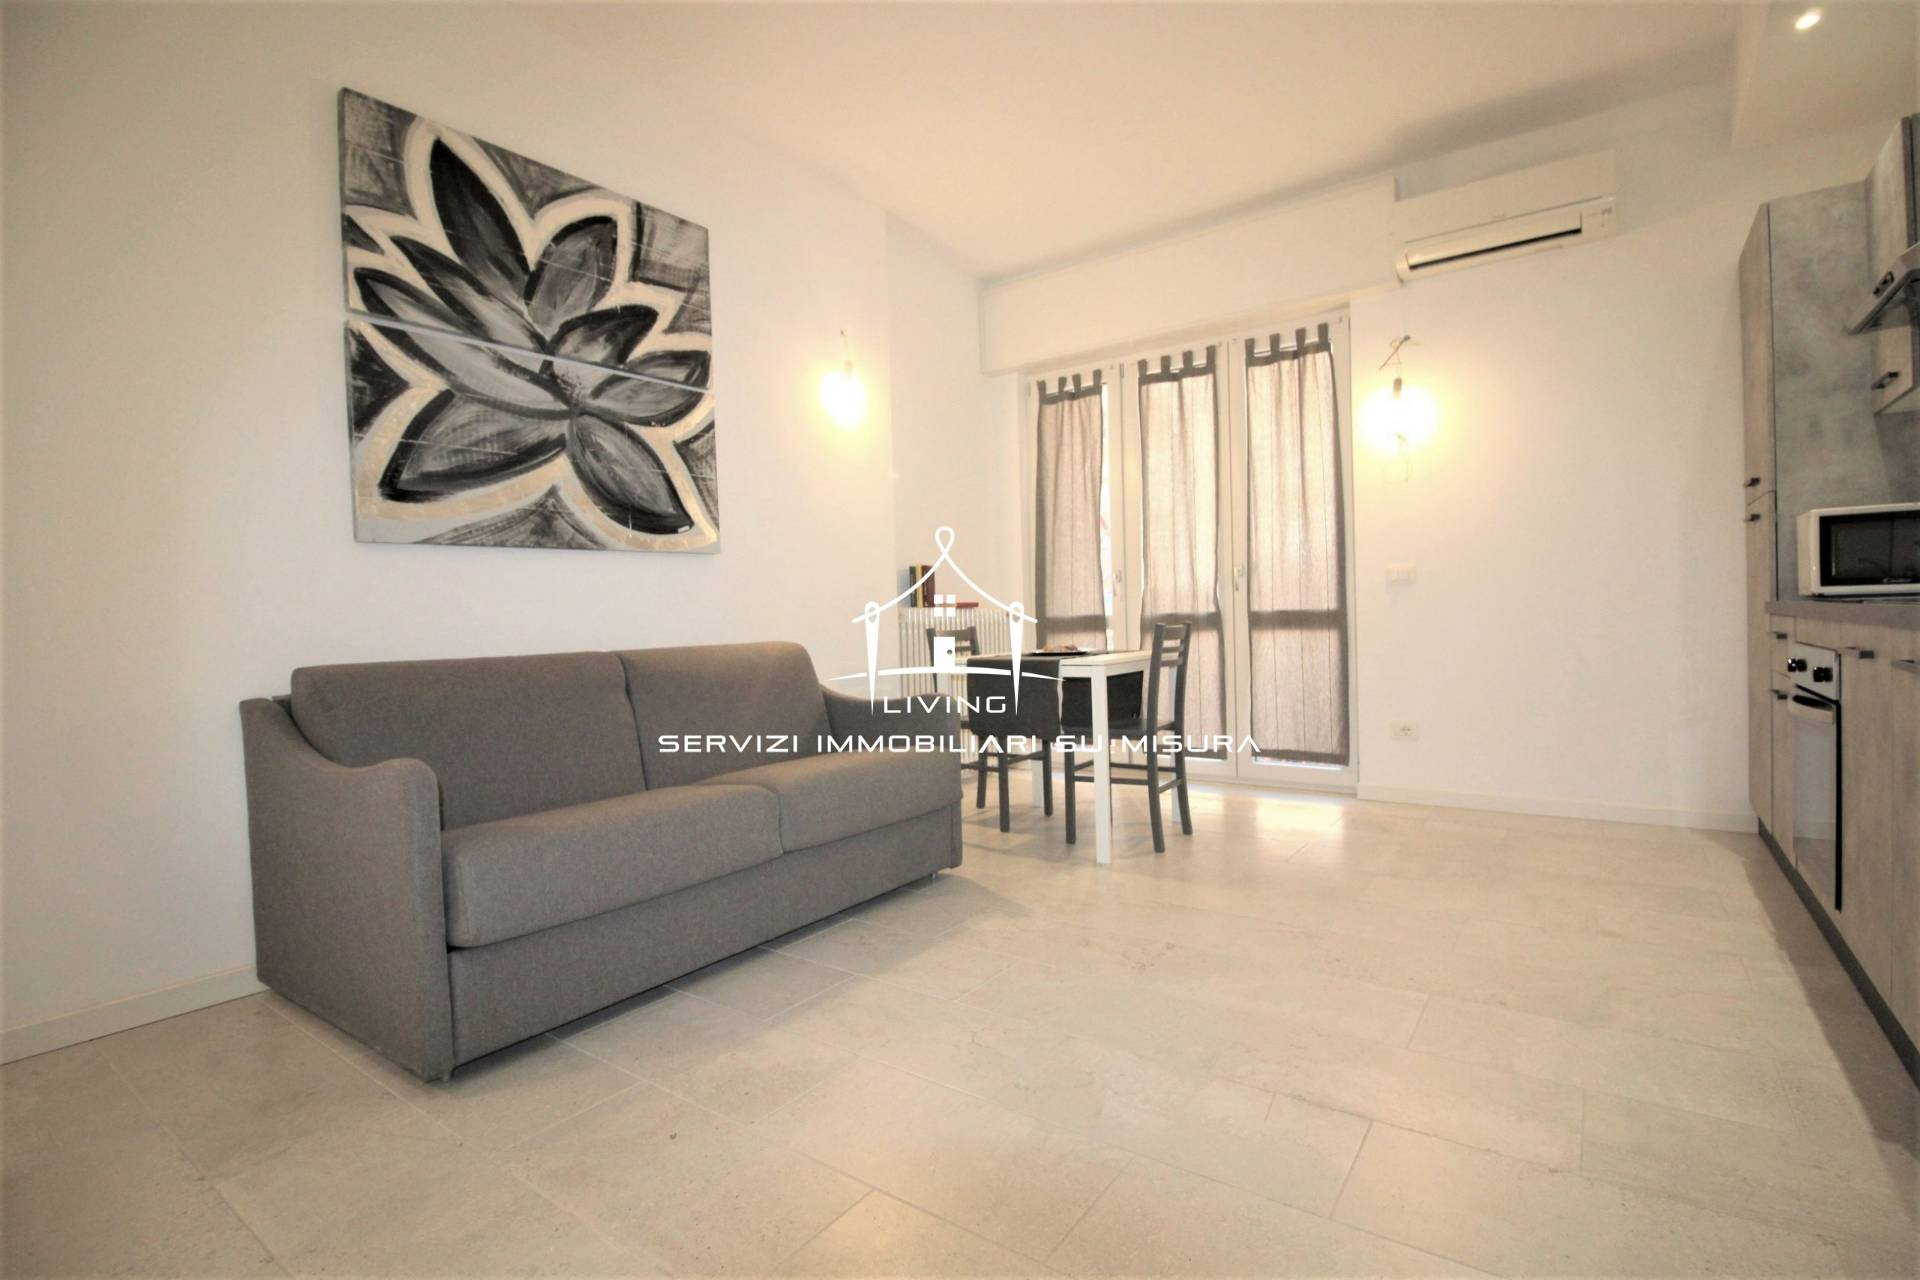 Appartamento in affitto a Bergamo, 1 locali, zona gnola, prezzo € 450 | PortaleAgenzieImmobiliari.it